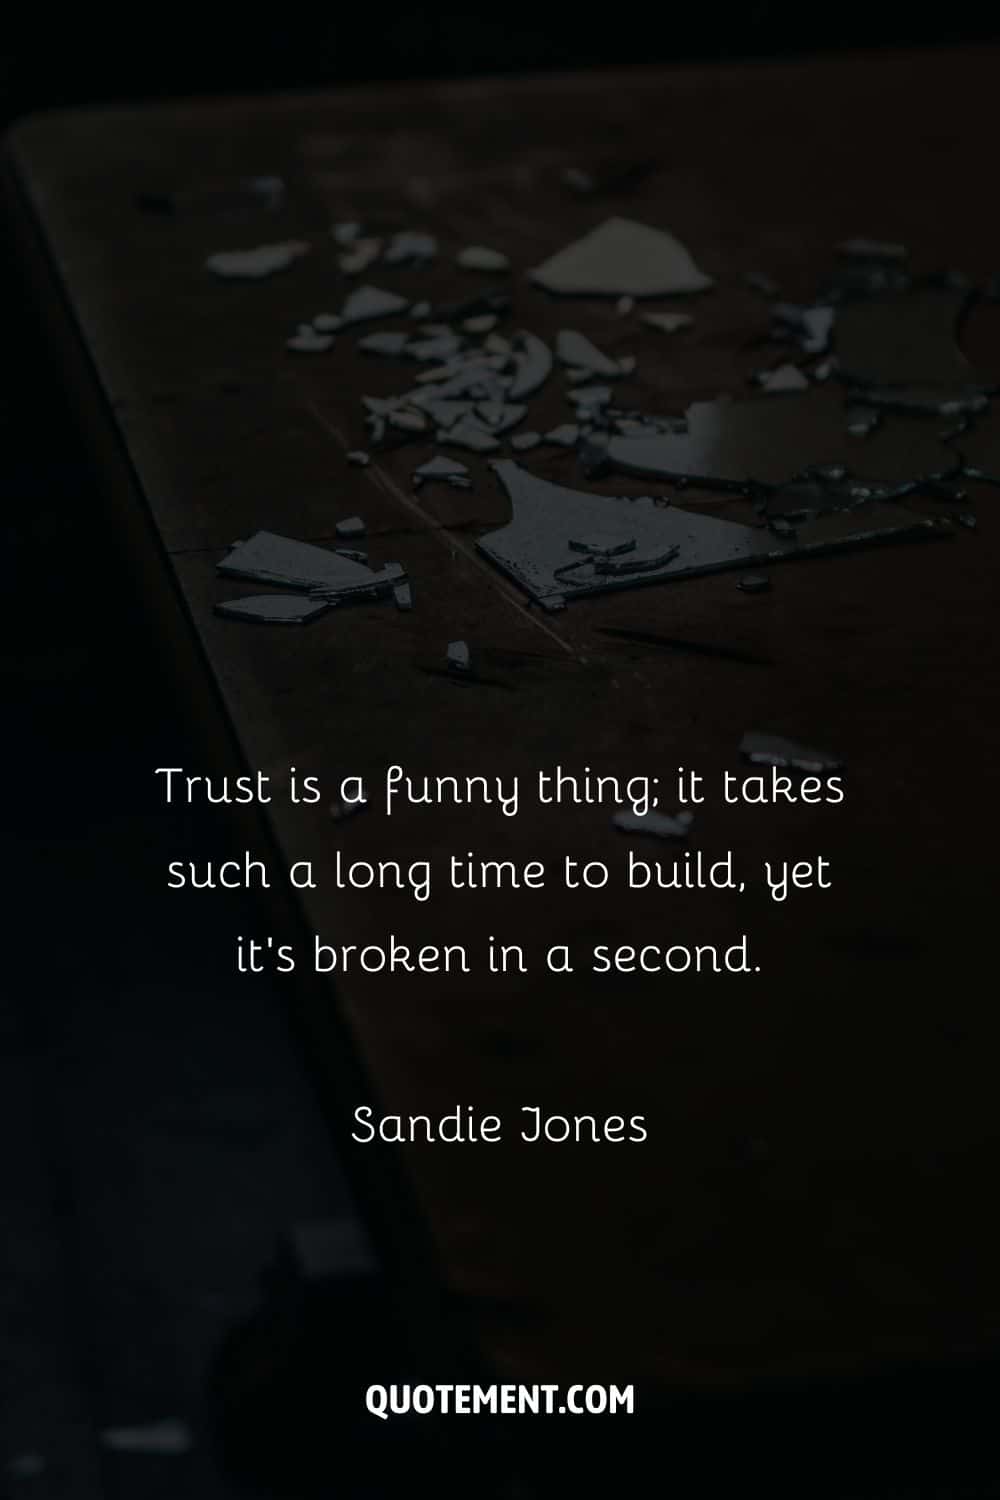 broken mirror image representing top broken trust quote